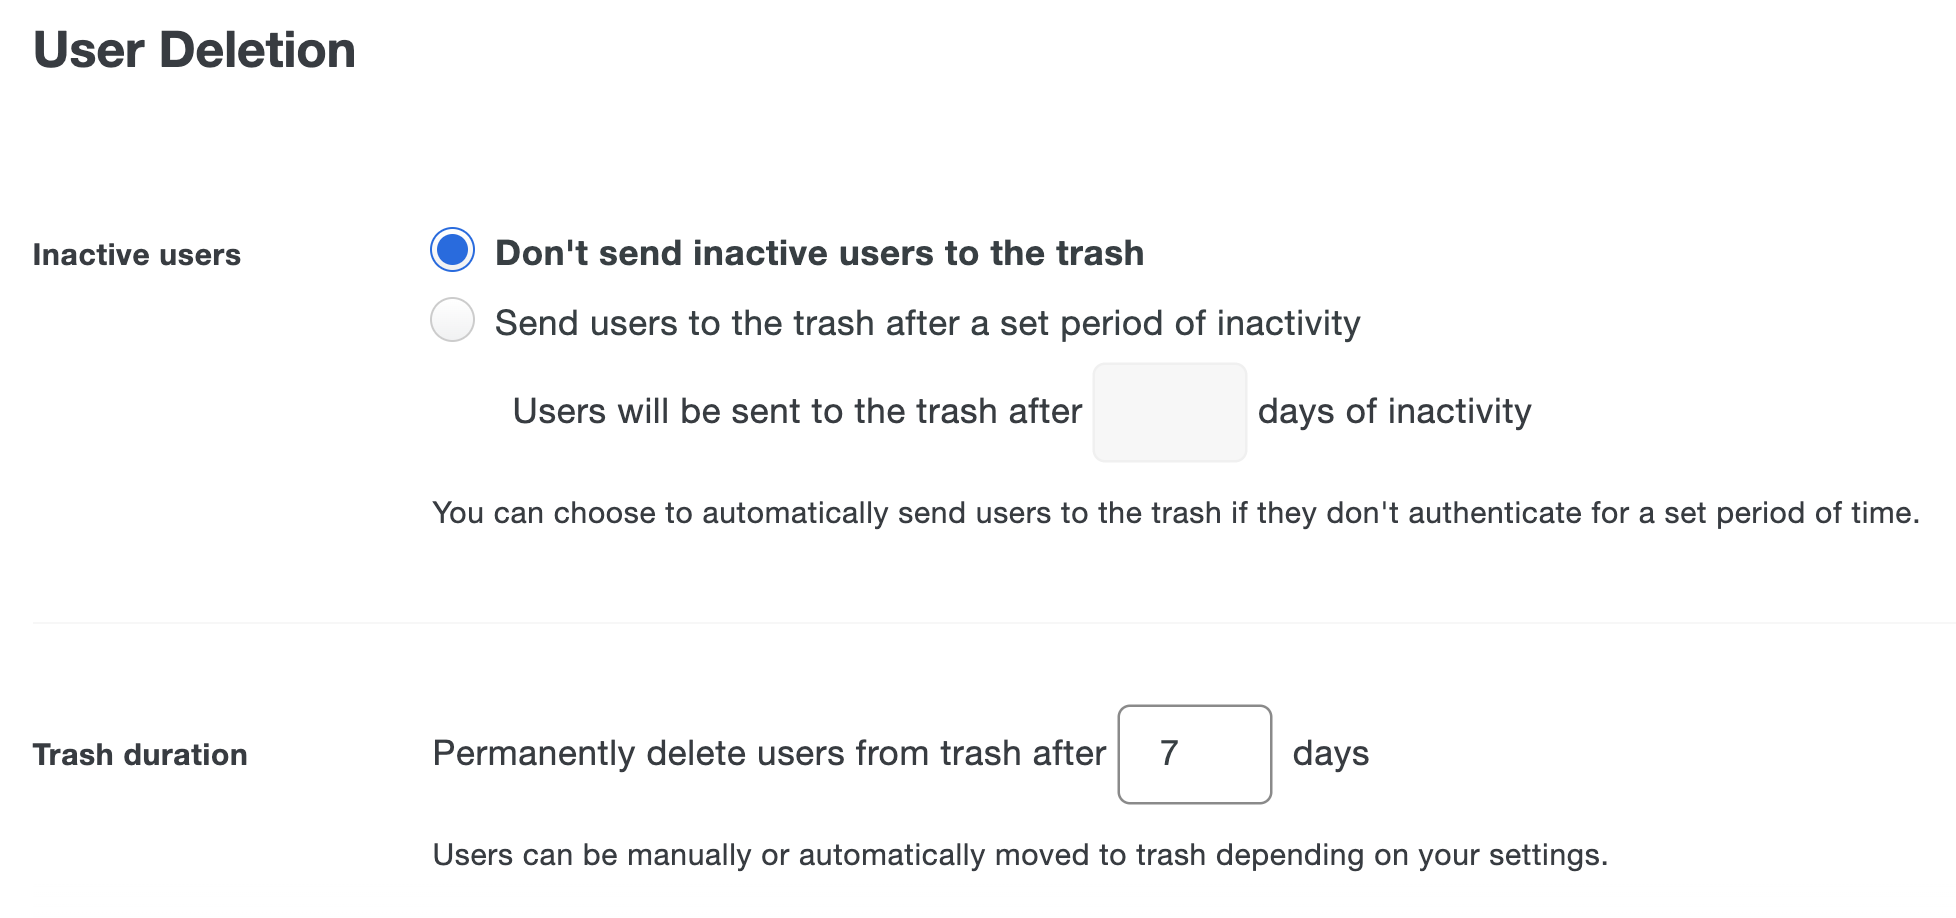 User Deletion settings